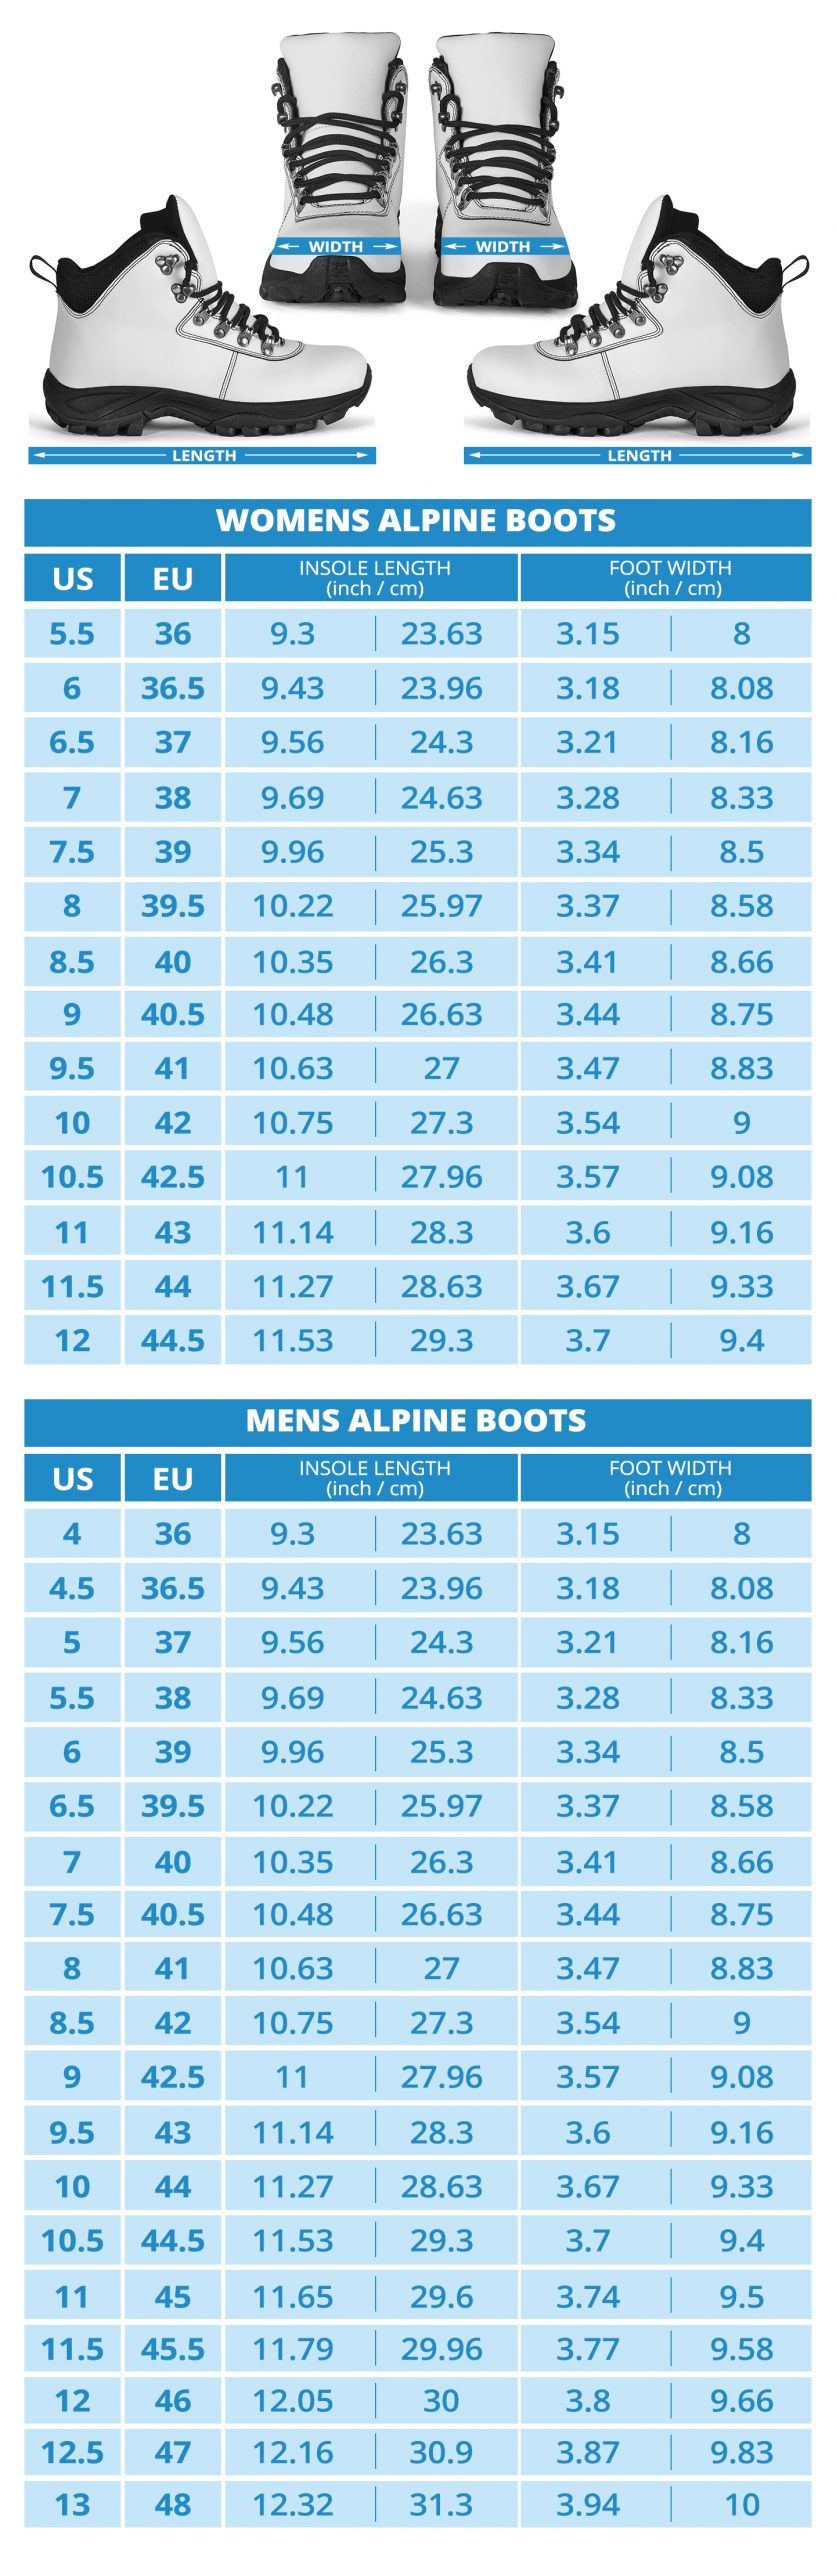 Subaru Alpine Boots Sizing Chart